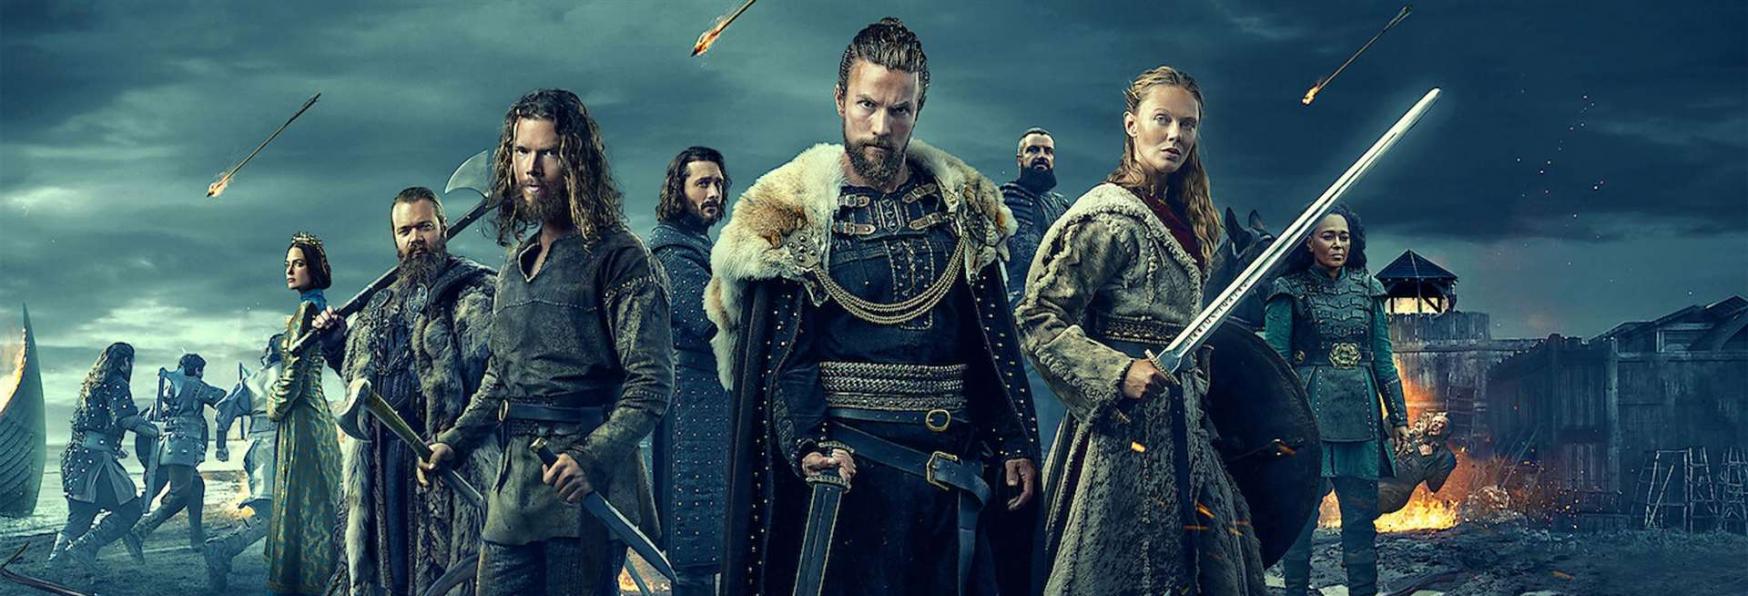 Vikings: Valhalla 2 - Netflix rilascia il Trailer Ufficiale della nuova Stagione